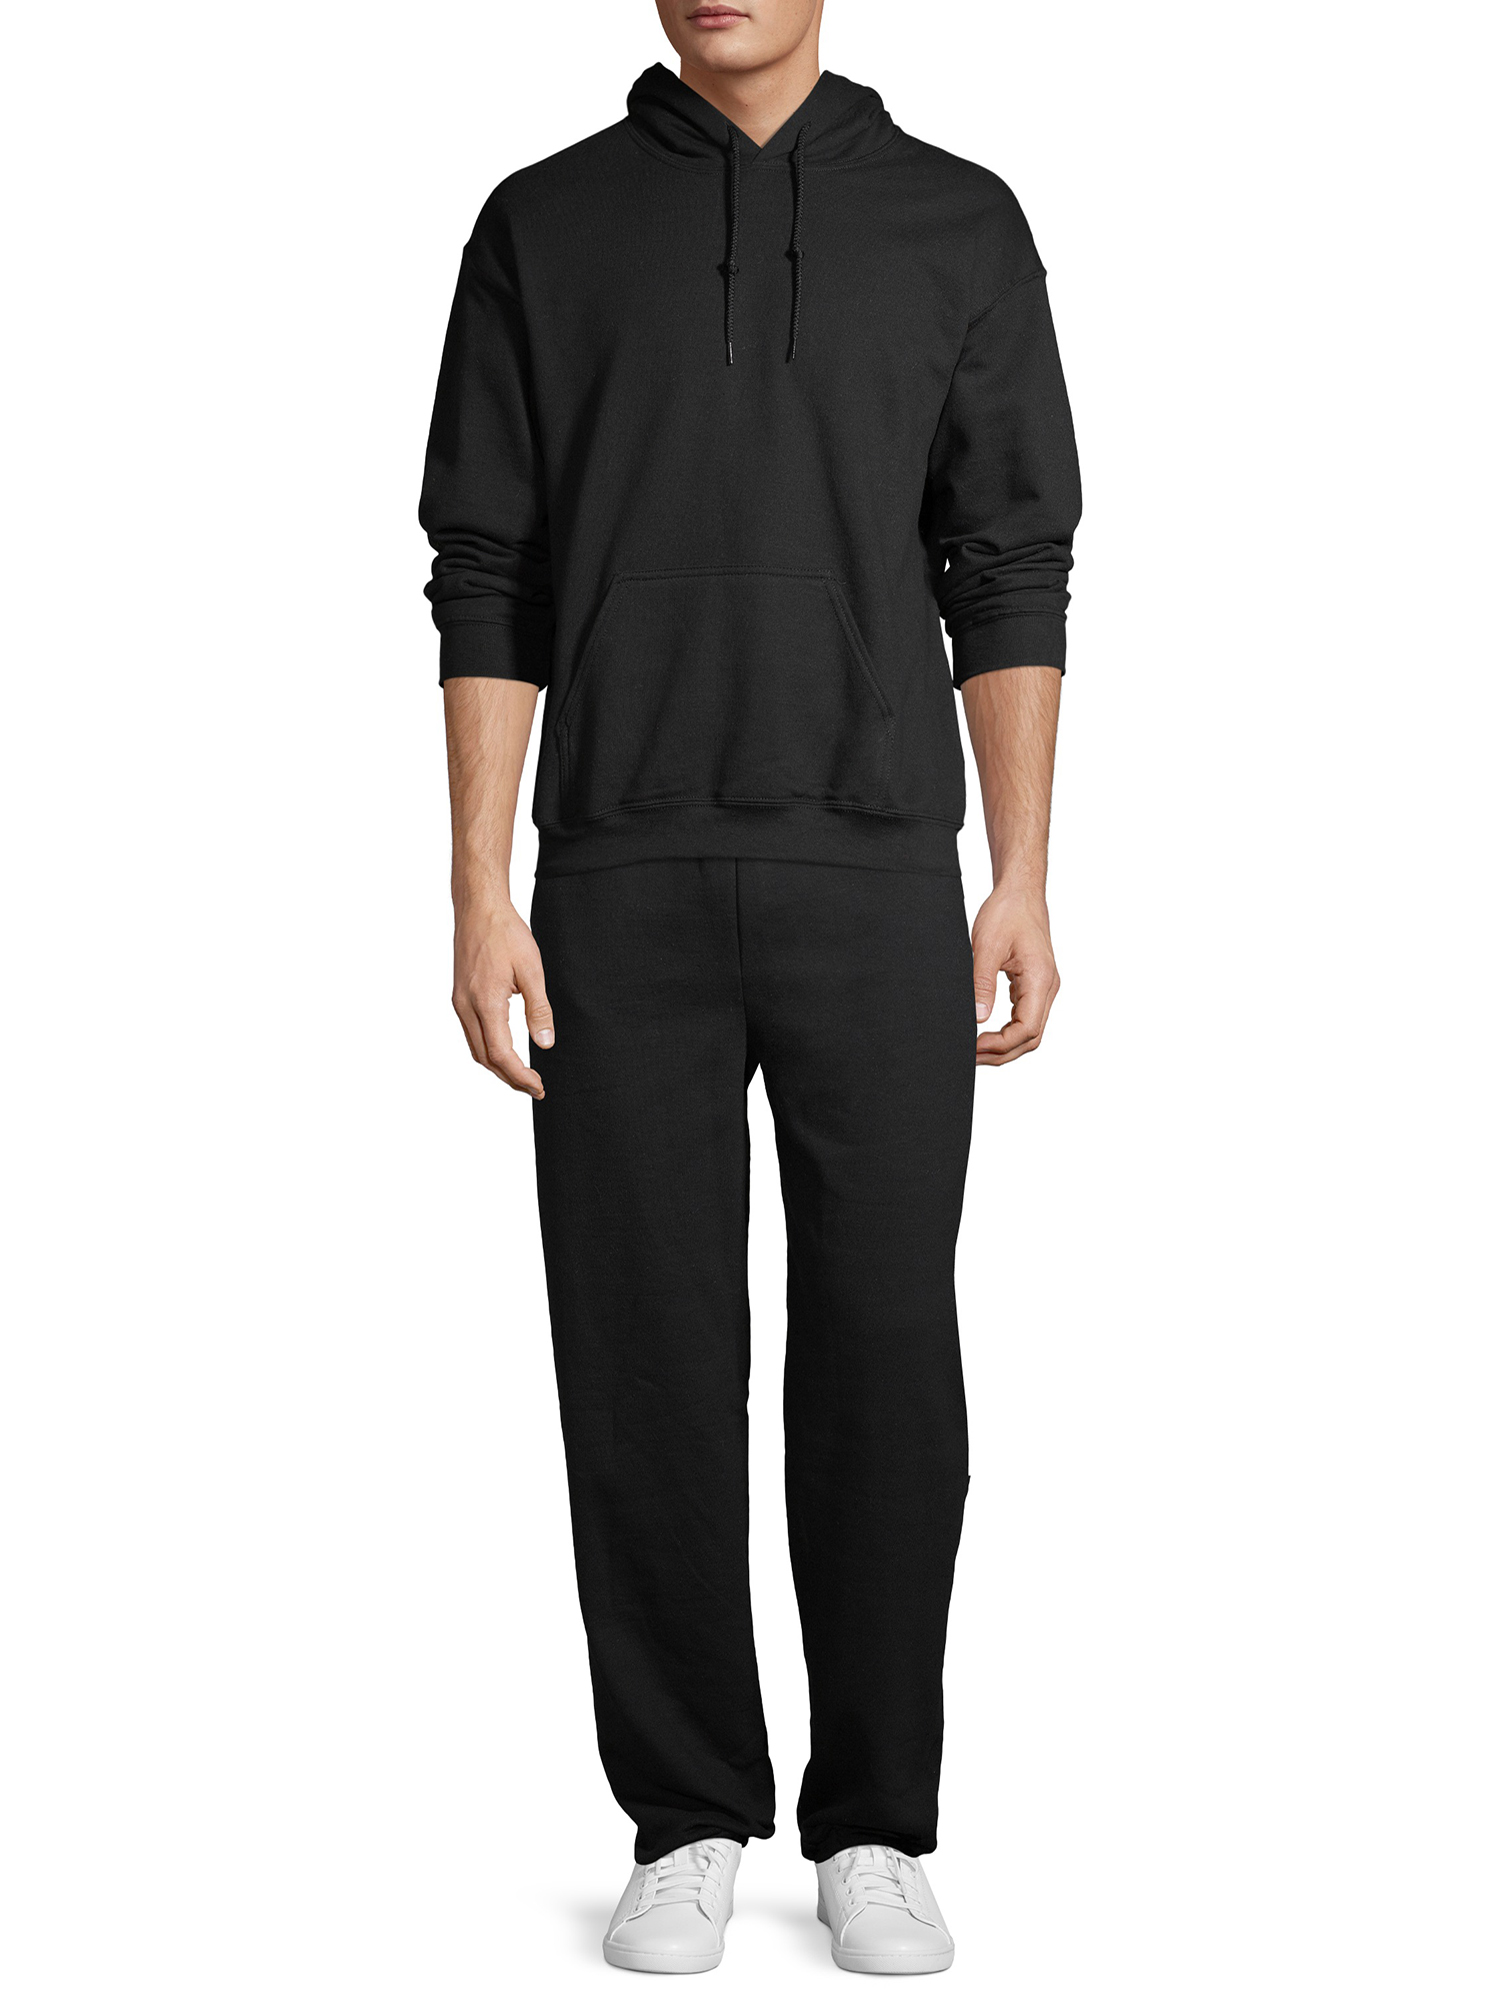 Gildan Unisex Heavy Blend Fleece Hooded Sweatshirt, Size Small to 3XL - image 4 of 6